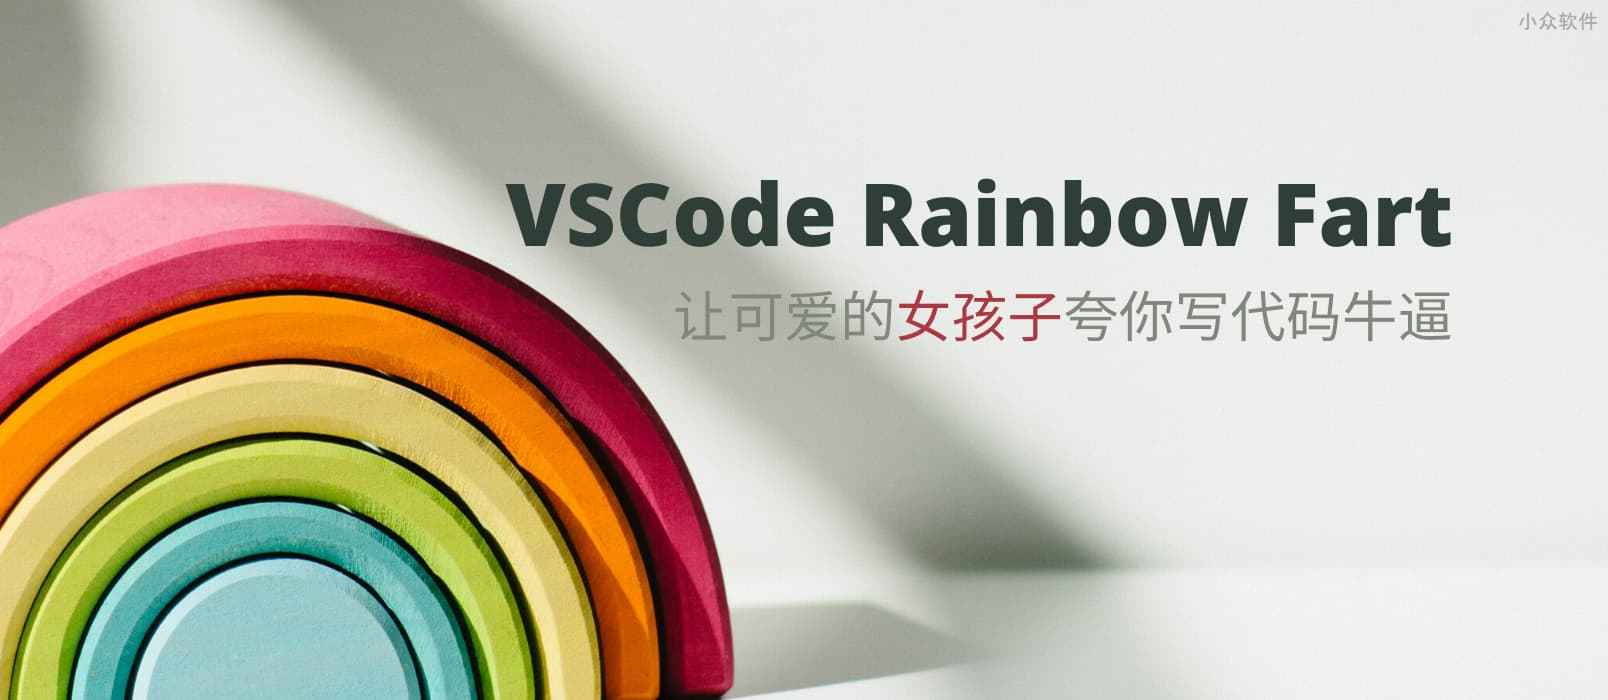 VSCode Rainbow Fart - 编程时，可爱的女孩子夸你写代码牛逼 1